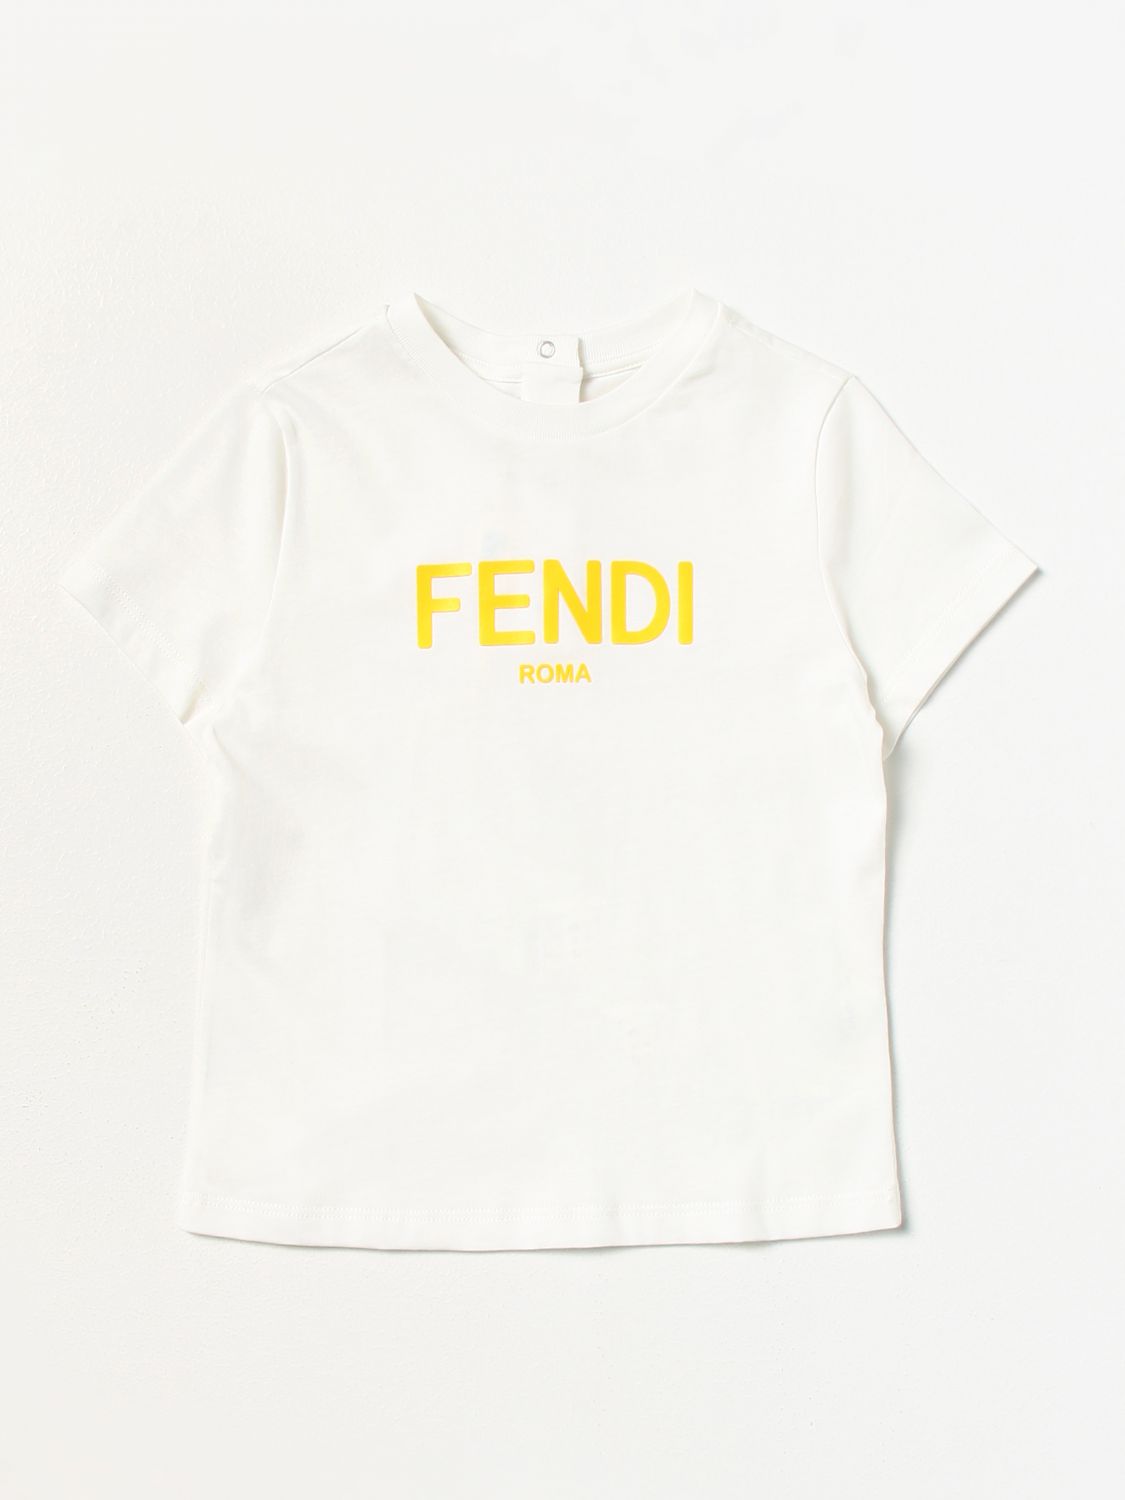 FENDI T-SHIRT FENDI KIDS KIDS,E46932001